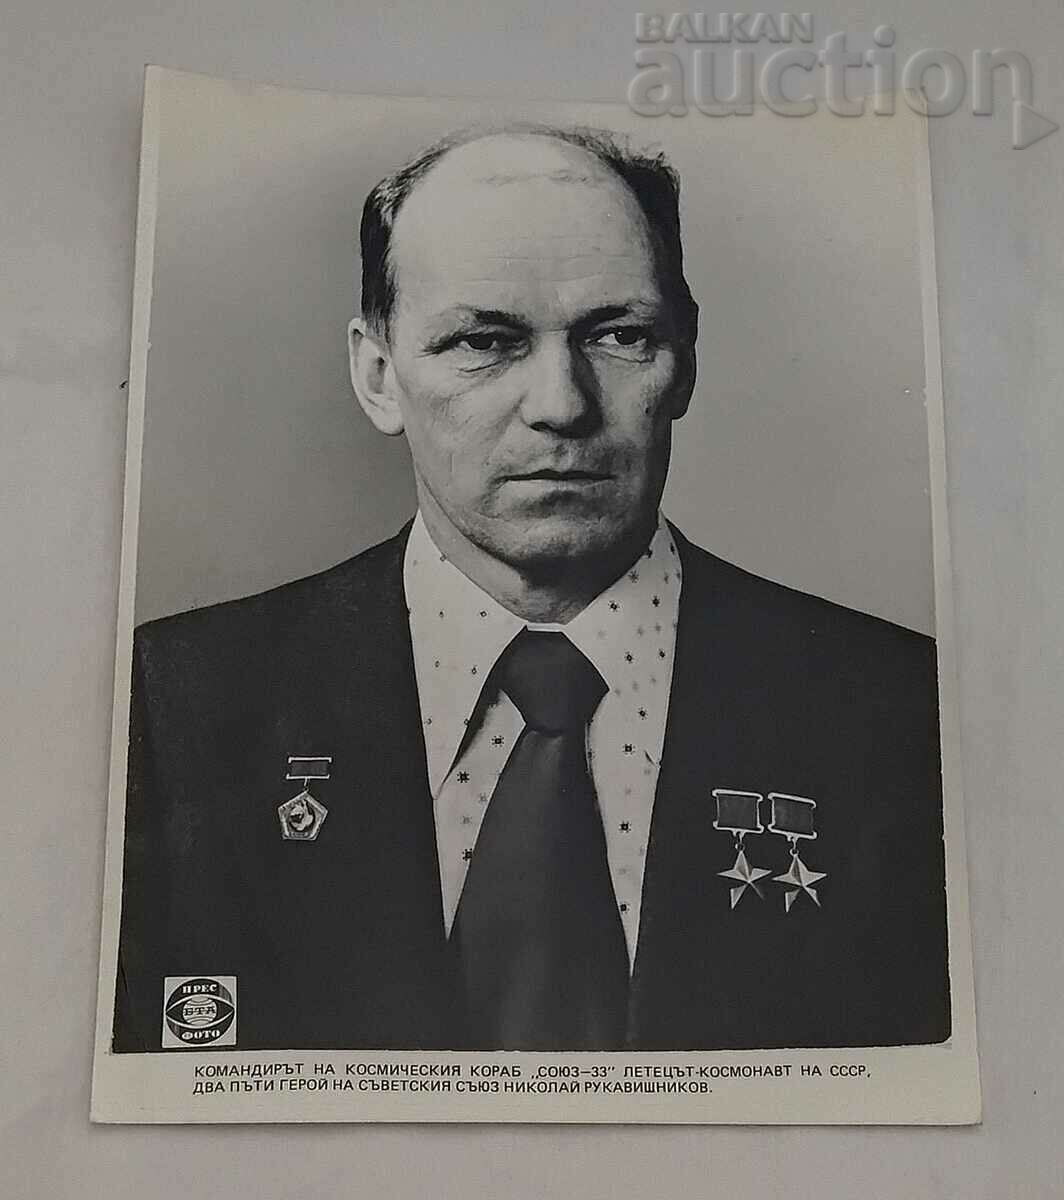 NIKOLAI RUKAVISHNIKOV "SOYUZ-33" ΦΩΤΟΓΡΑΦΙΑ ΤΥΠΟΥ ΕΣΣΔ 1979.